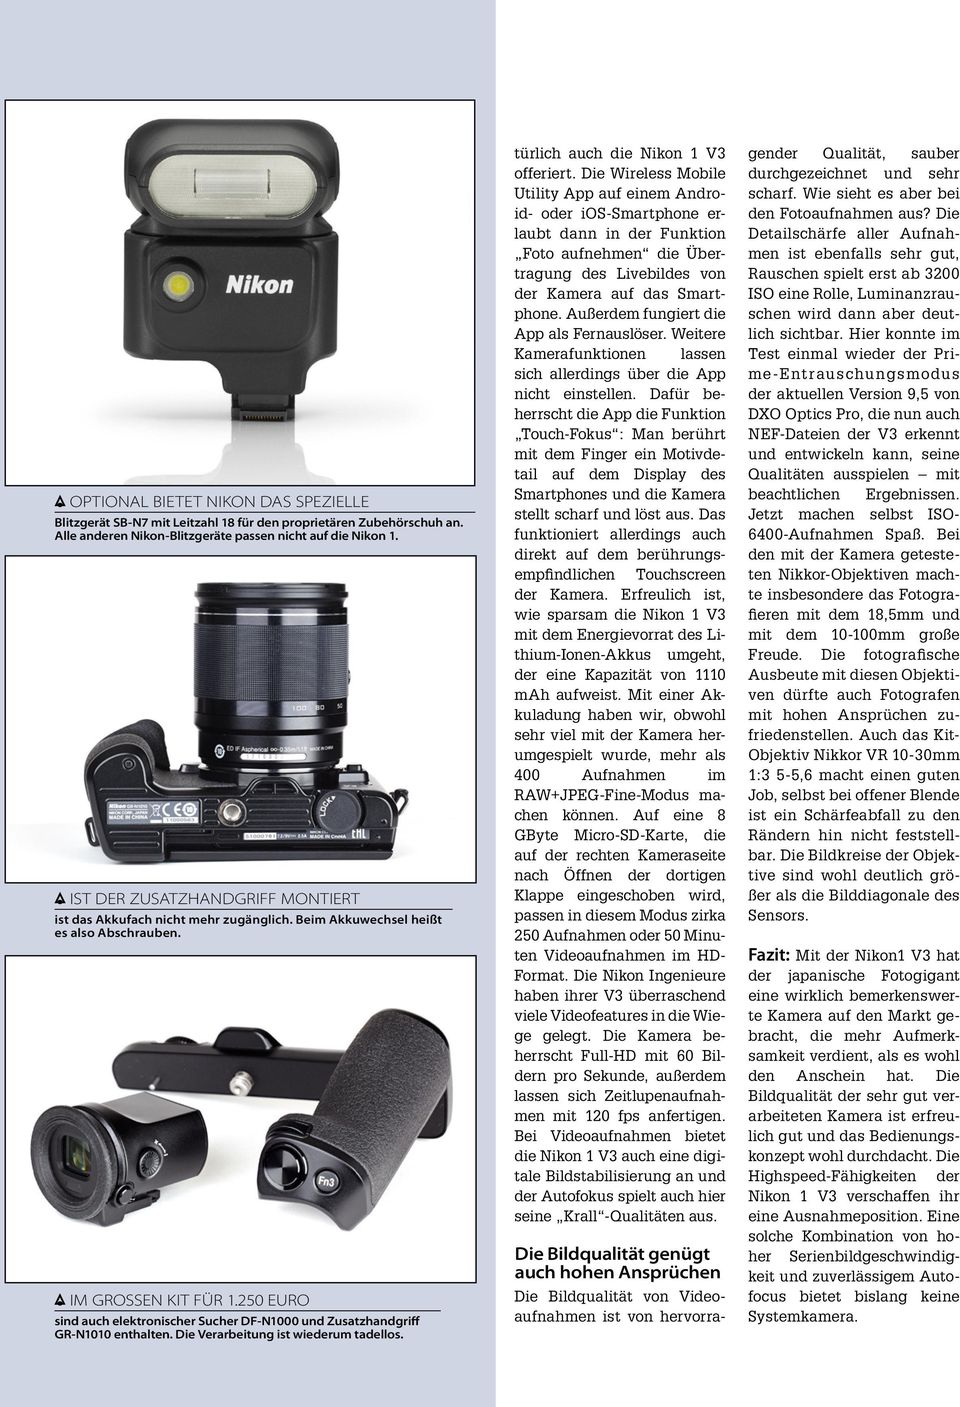 250 EURO sind auch elektronischer Sucher DF-N1000 und Zusatzhandgriff GR-N1010 enthalten. Die Verarbeitung ist wiederum tadellos. türlich auch die Nikon 1 V3 offeriert.